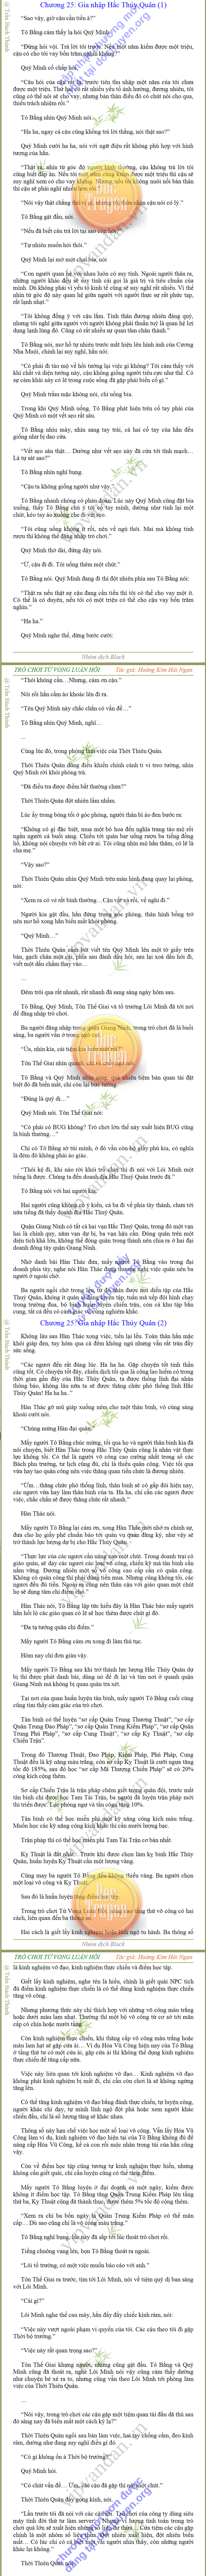 TRÒ CHƠI TỬ VONG LUÂN HỒI - Hoàng Kim Hải Ngạn - chương 25